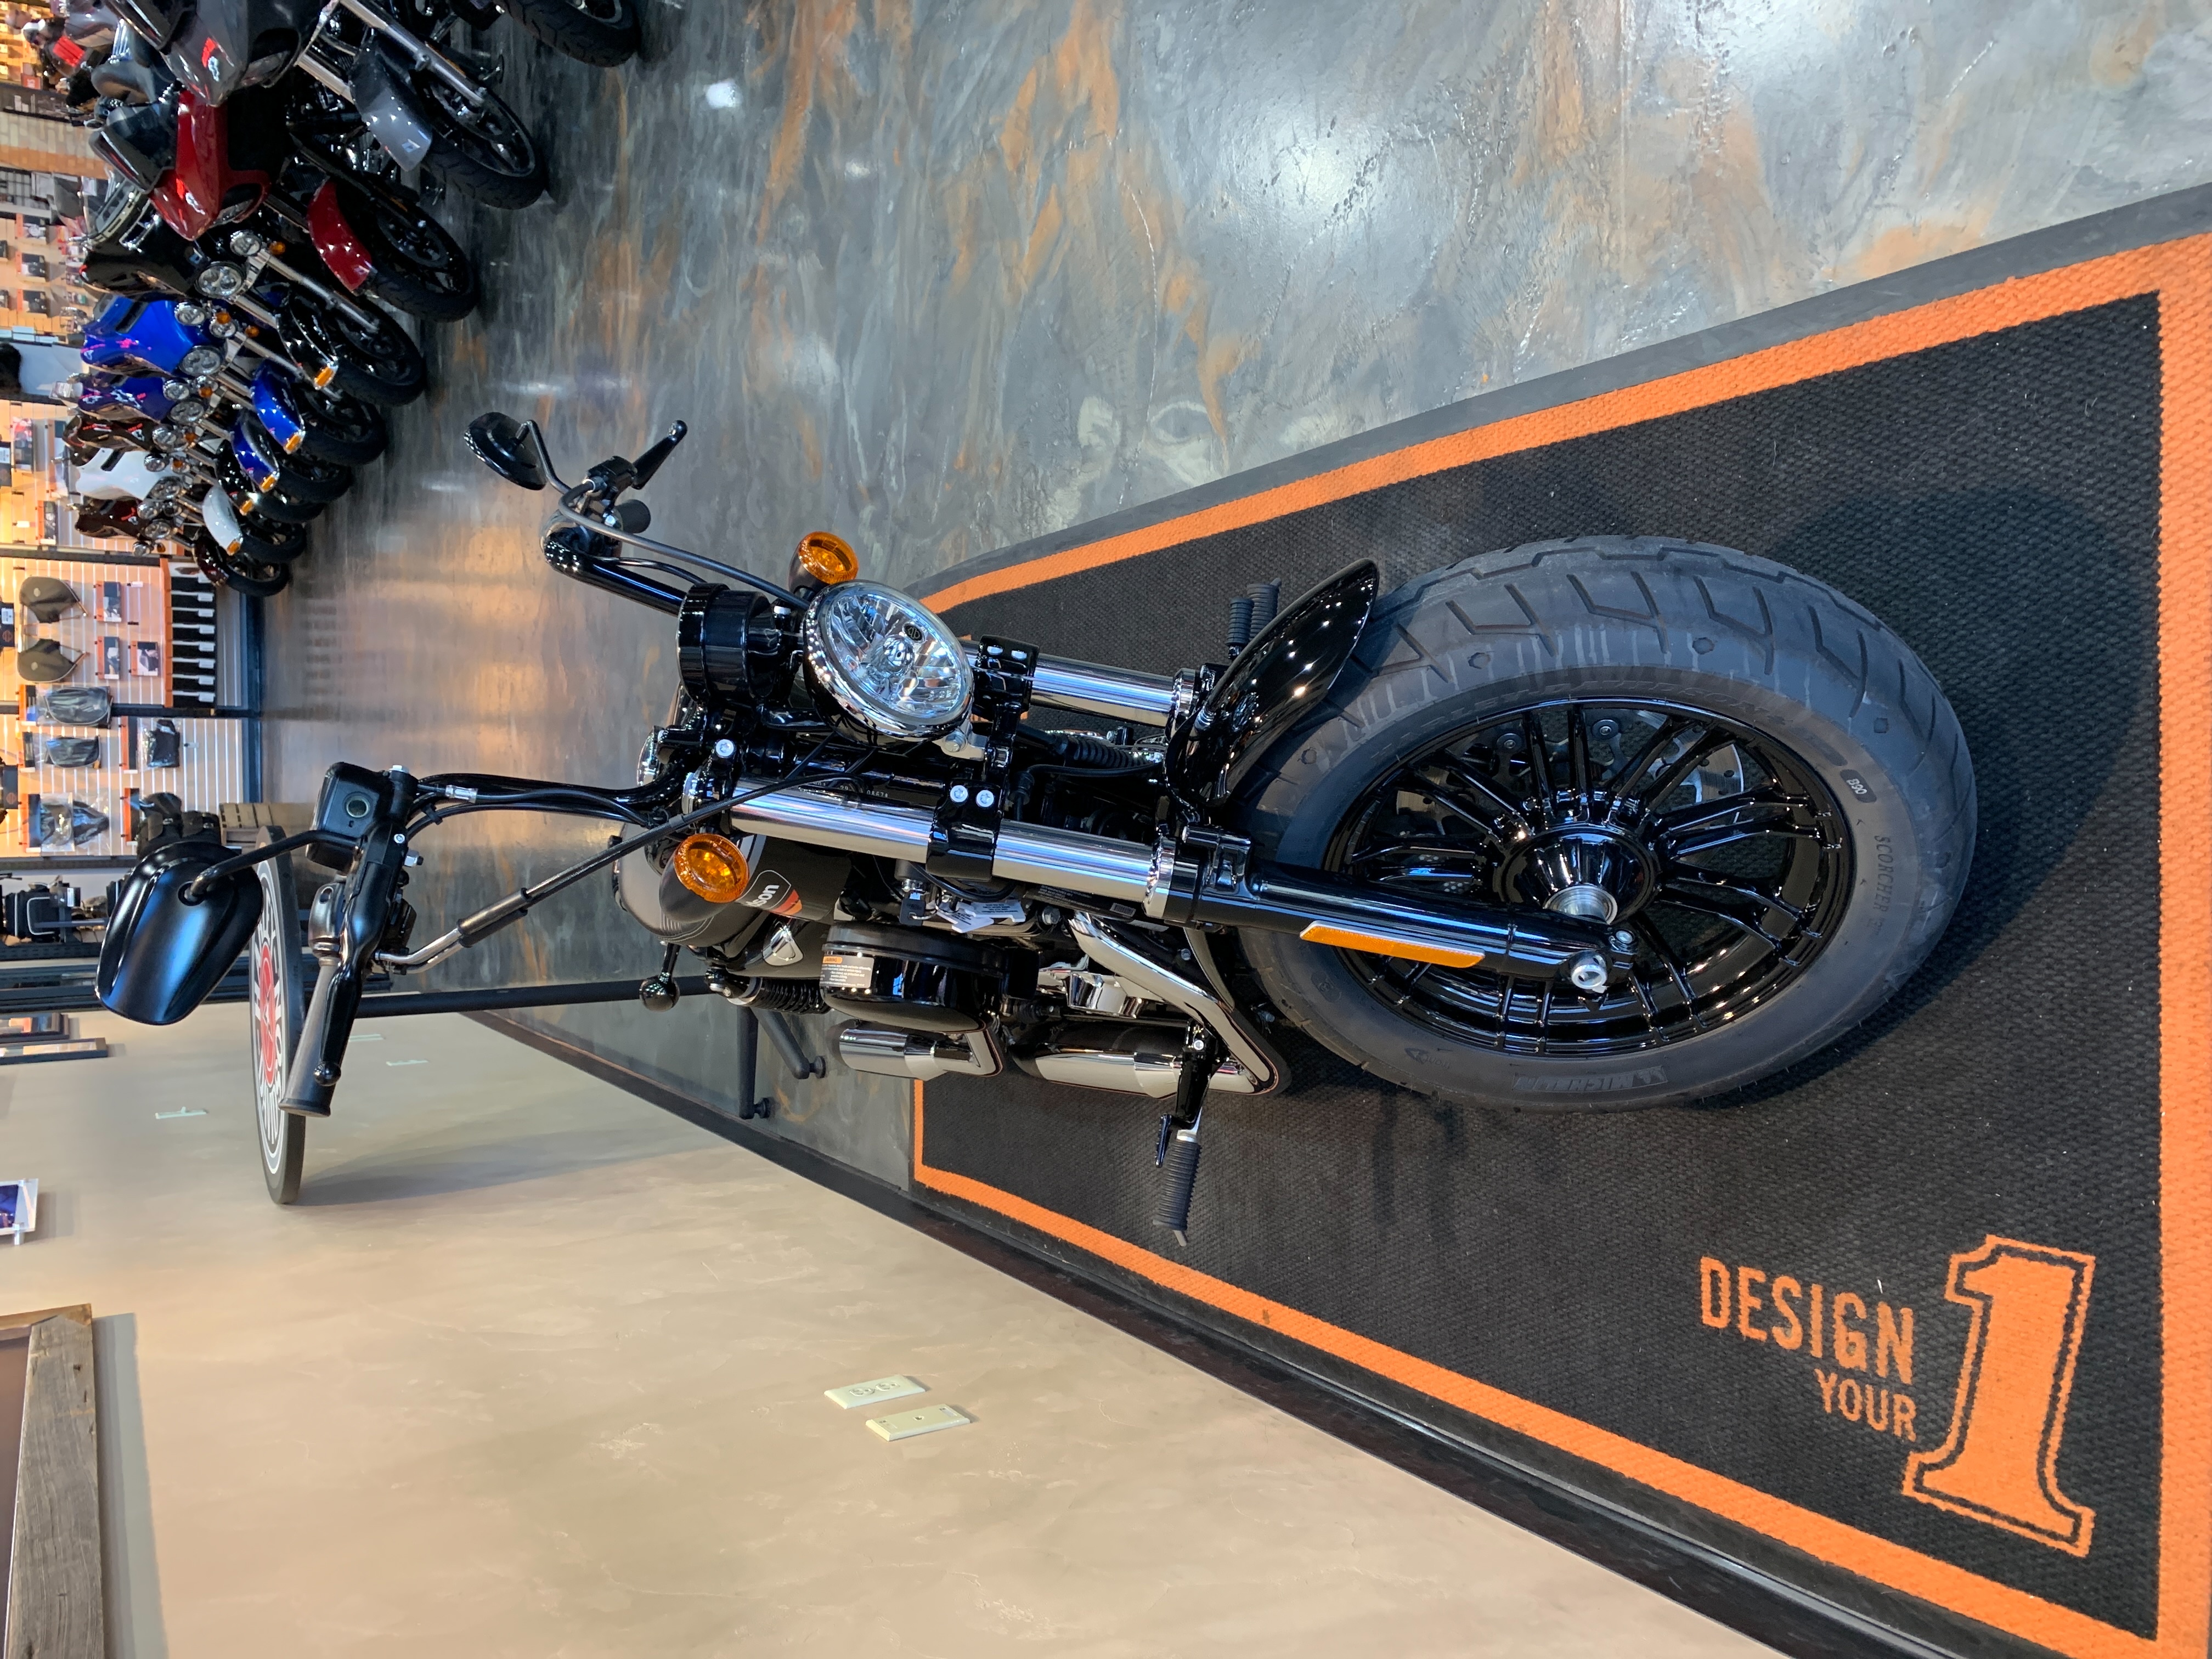 2018 Harley-Davidson Sportster Forty-Eight Special at Vandervest Harley-Davidson, Green Bay, WI 54303